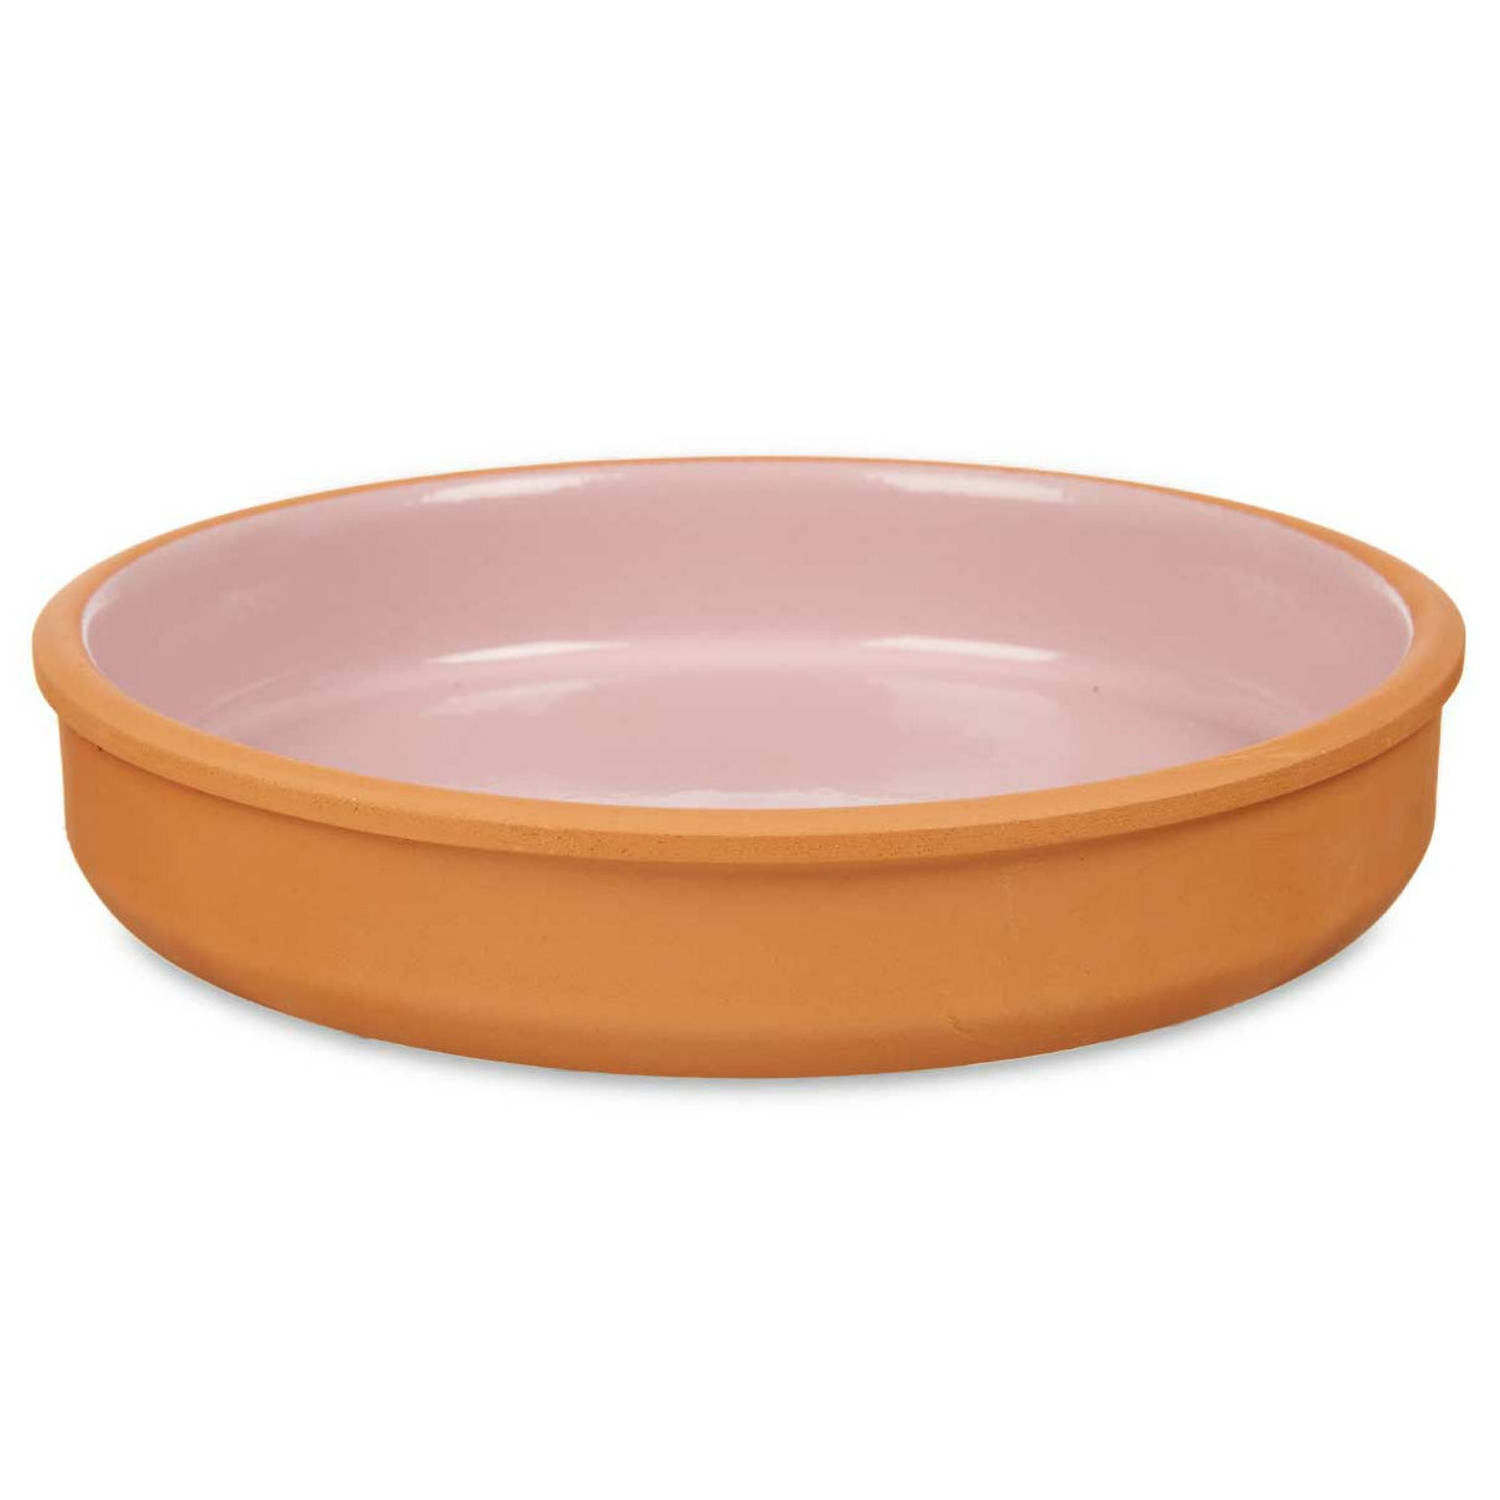 Tapas-hapjes serveren-oven schaal terracotta-roze 23 x 4 cm Snack en tapasschalen